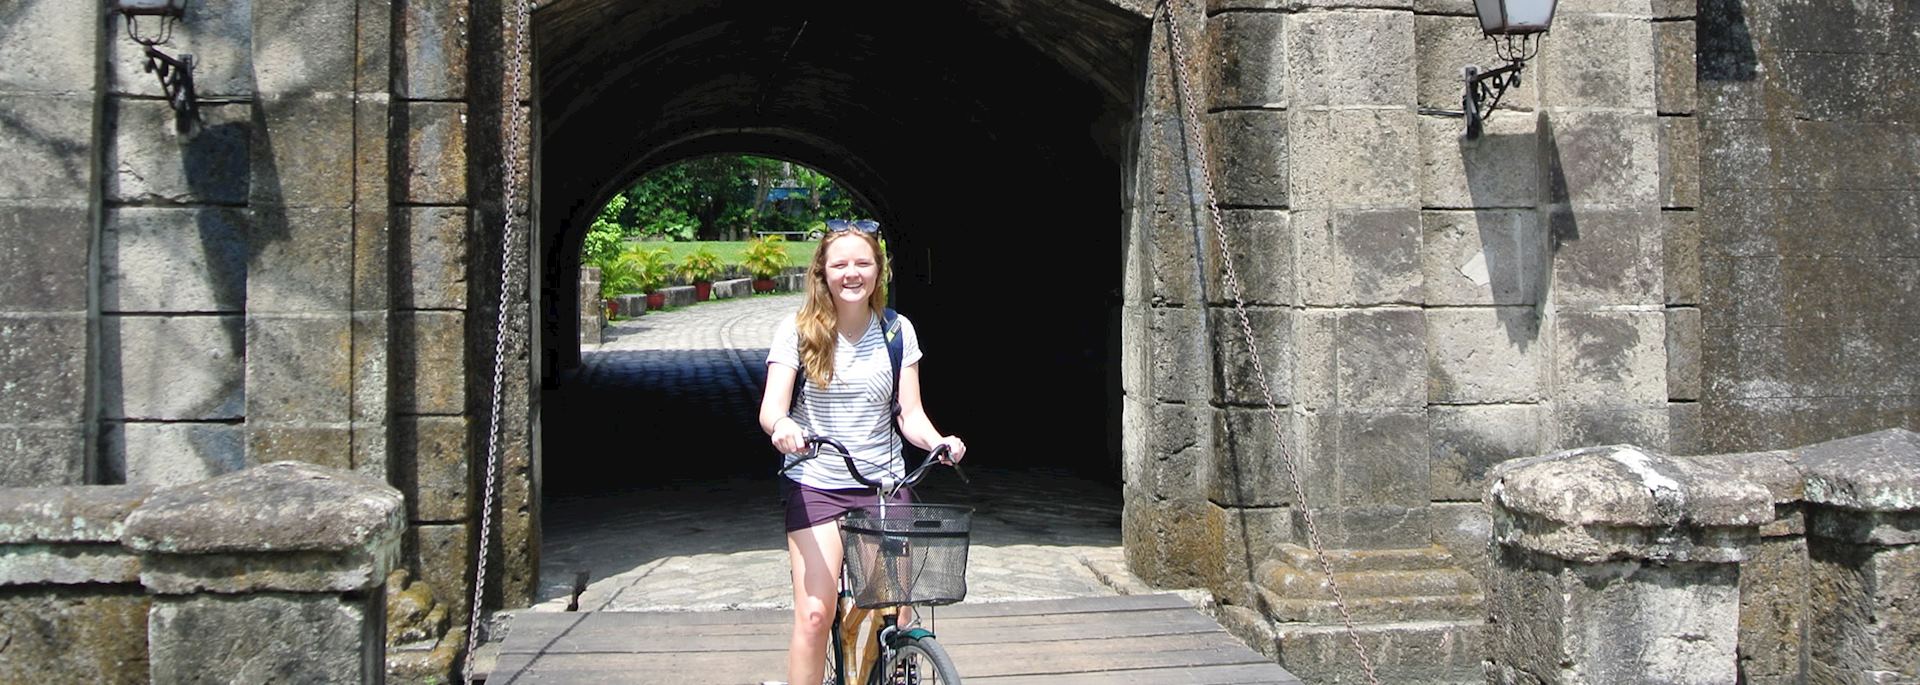 Isabel riding through Intramuros, Manila